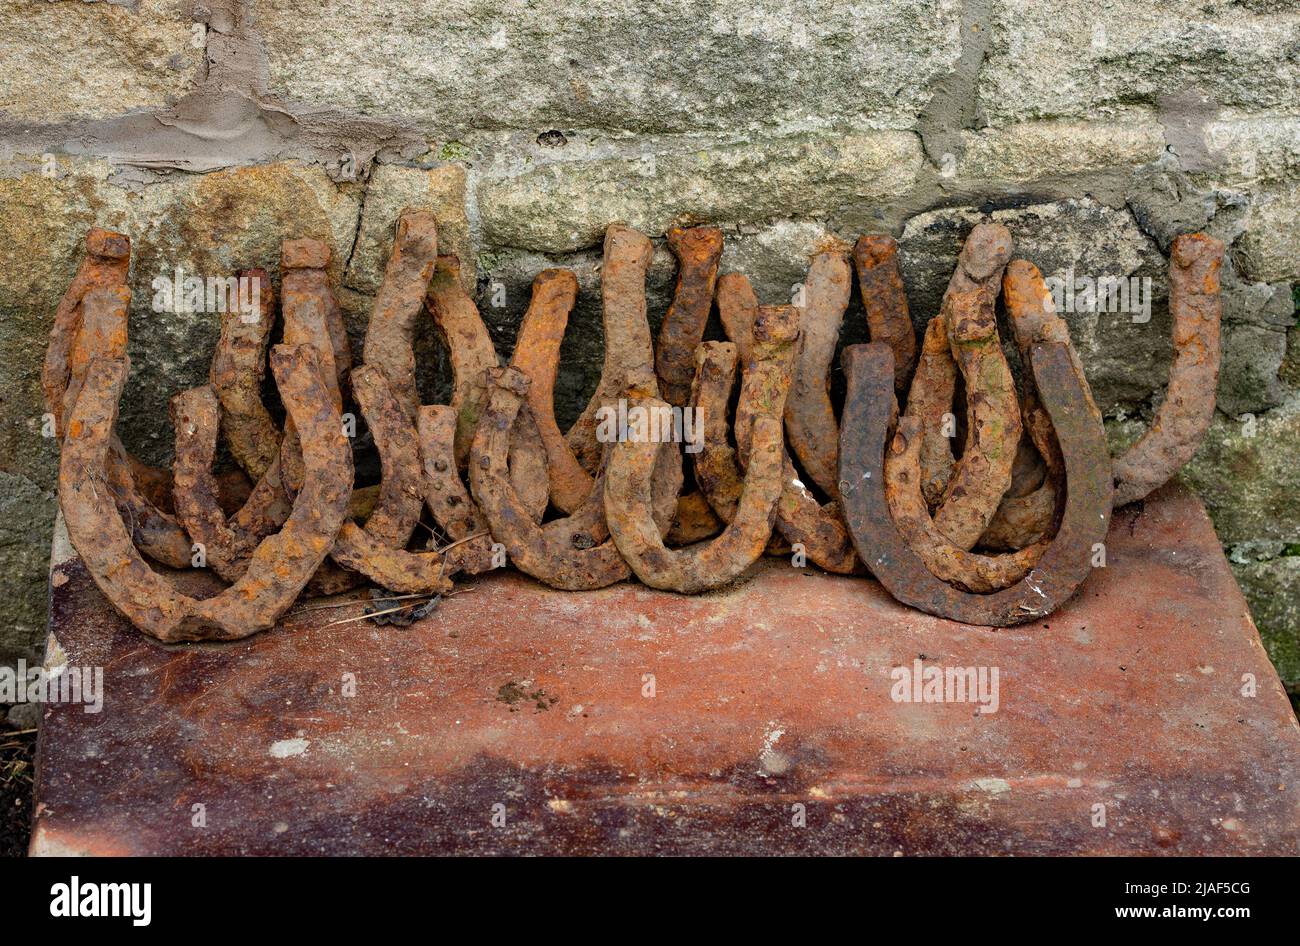 Rusty horse shoes, Newcastle, Northumberland, UK. Stock Photo